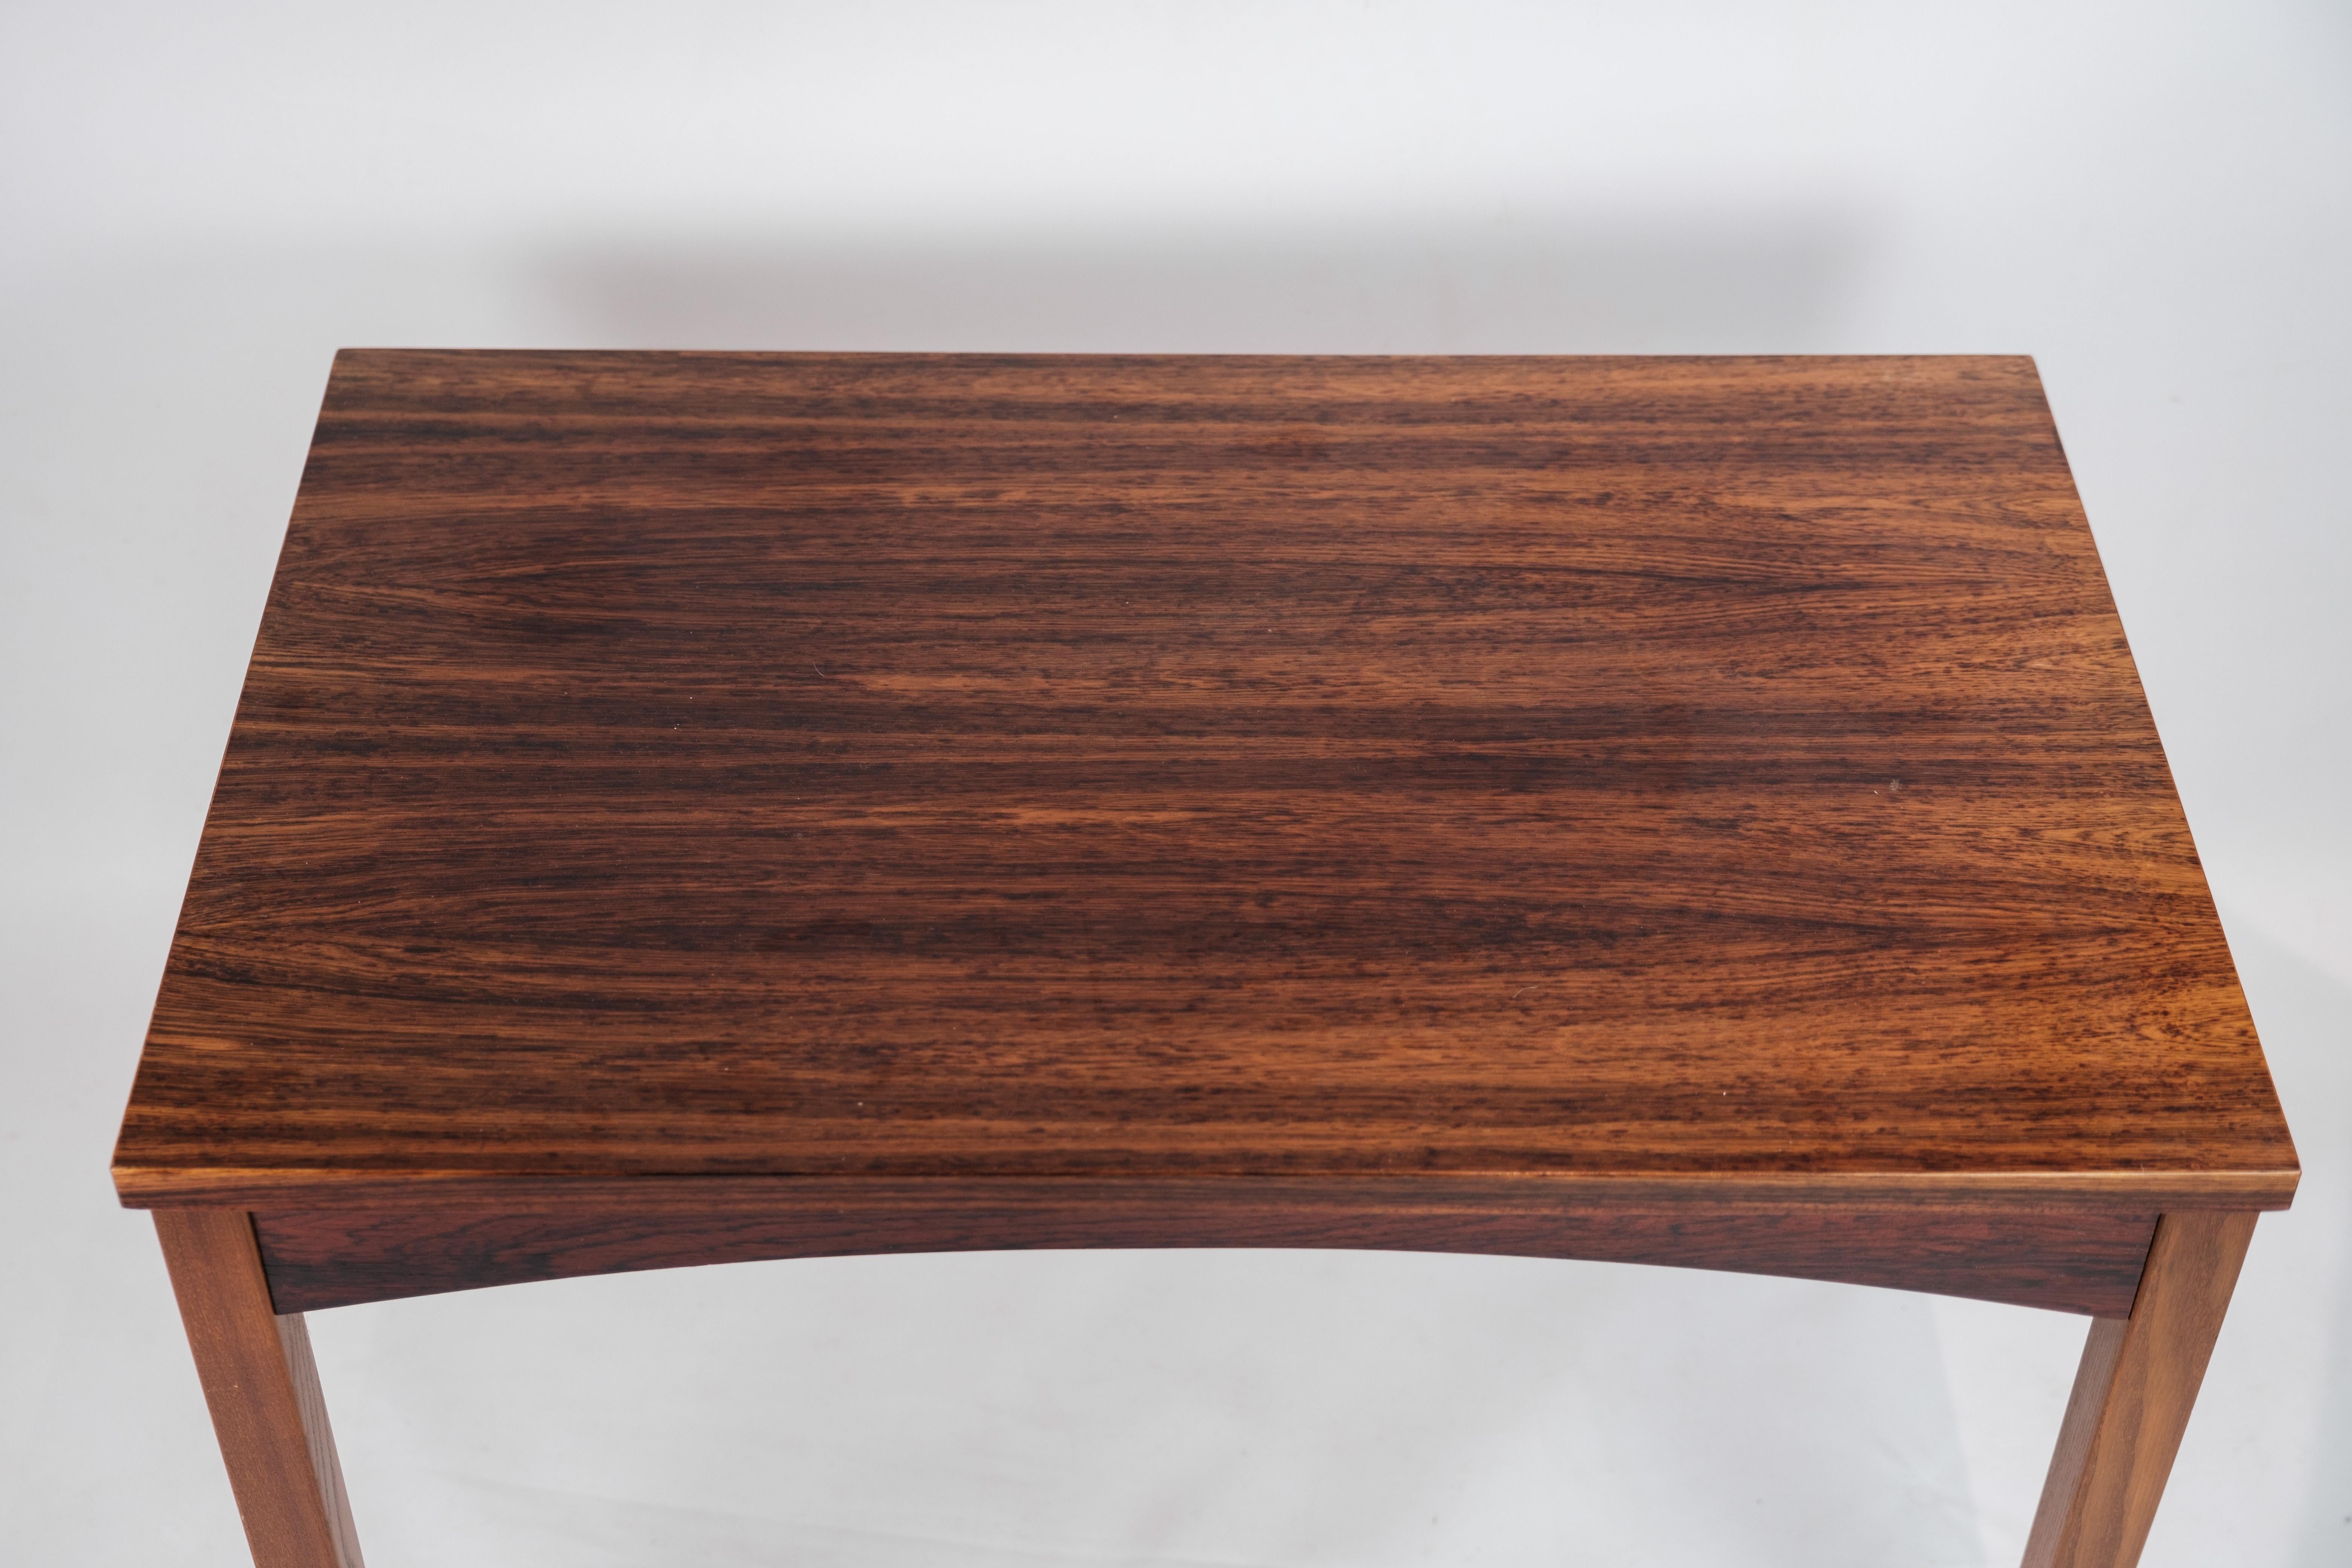 Cette table basse en palissandre exquis de Rio incarne l'essence du design danois des années 1960, mettant en valeur un savoir-faire inégalé et une élégance intemporelle. Fabriquée avec une attention méticuleuse aux détails, cette table témoigne des